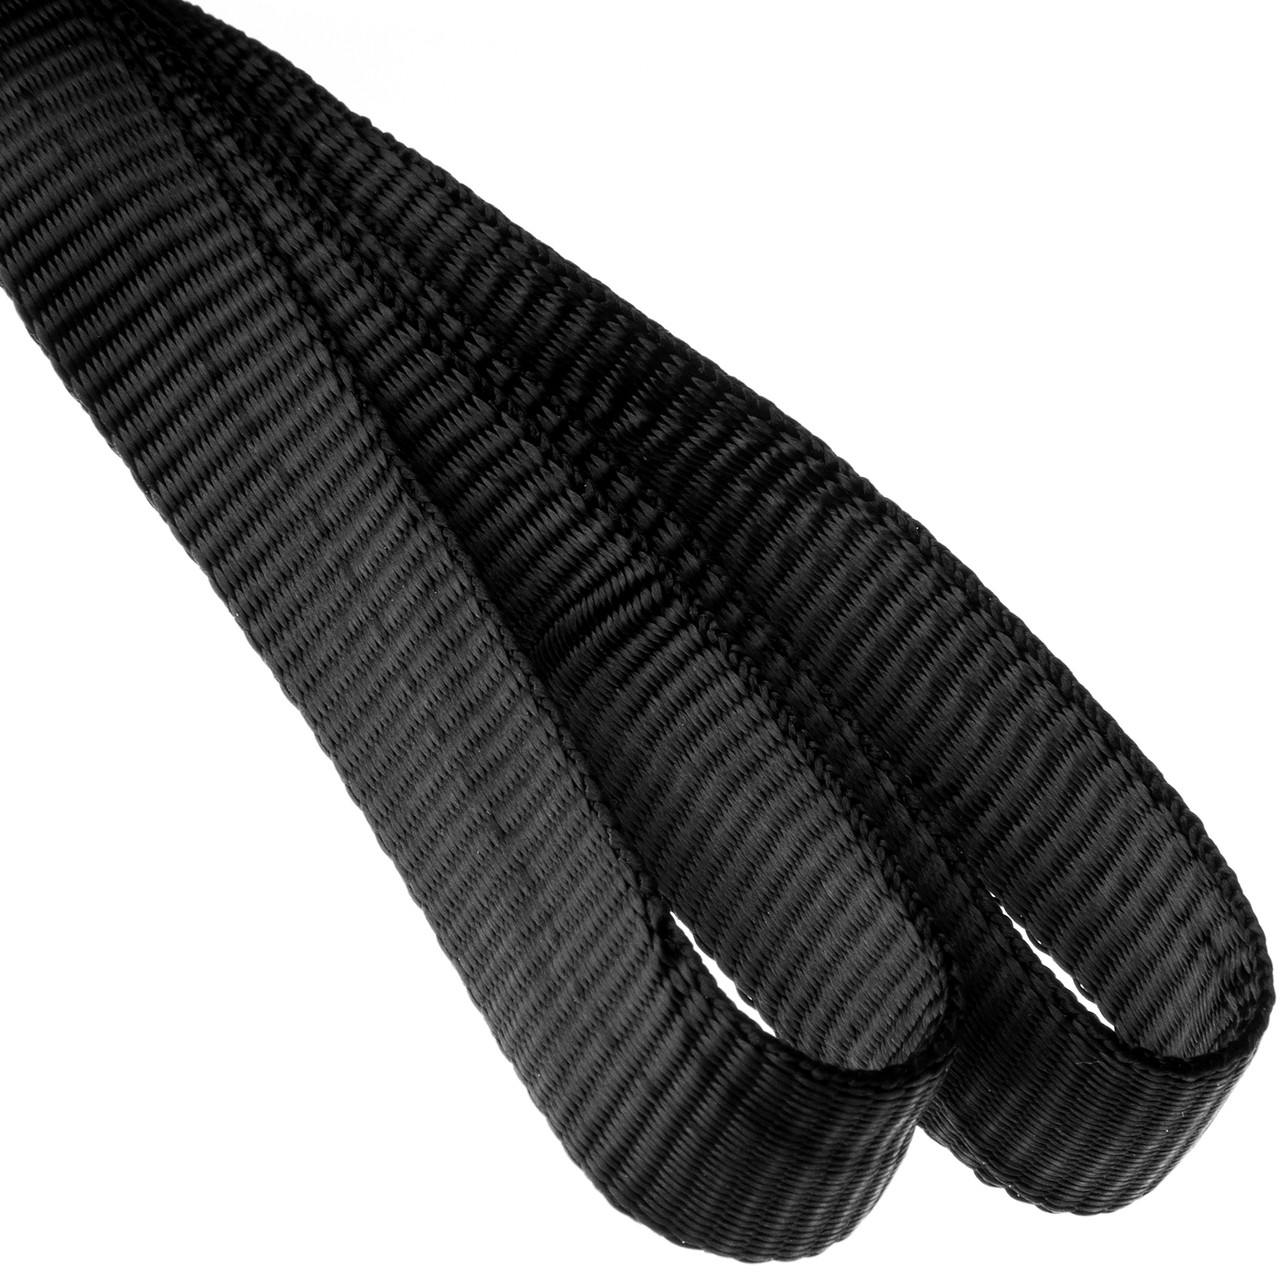 1/2" (12.7mm) Nylon Tubular Webbing Black